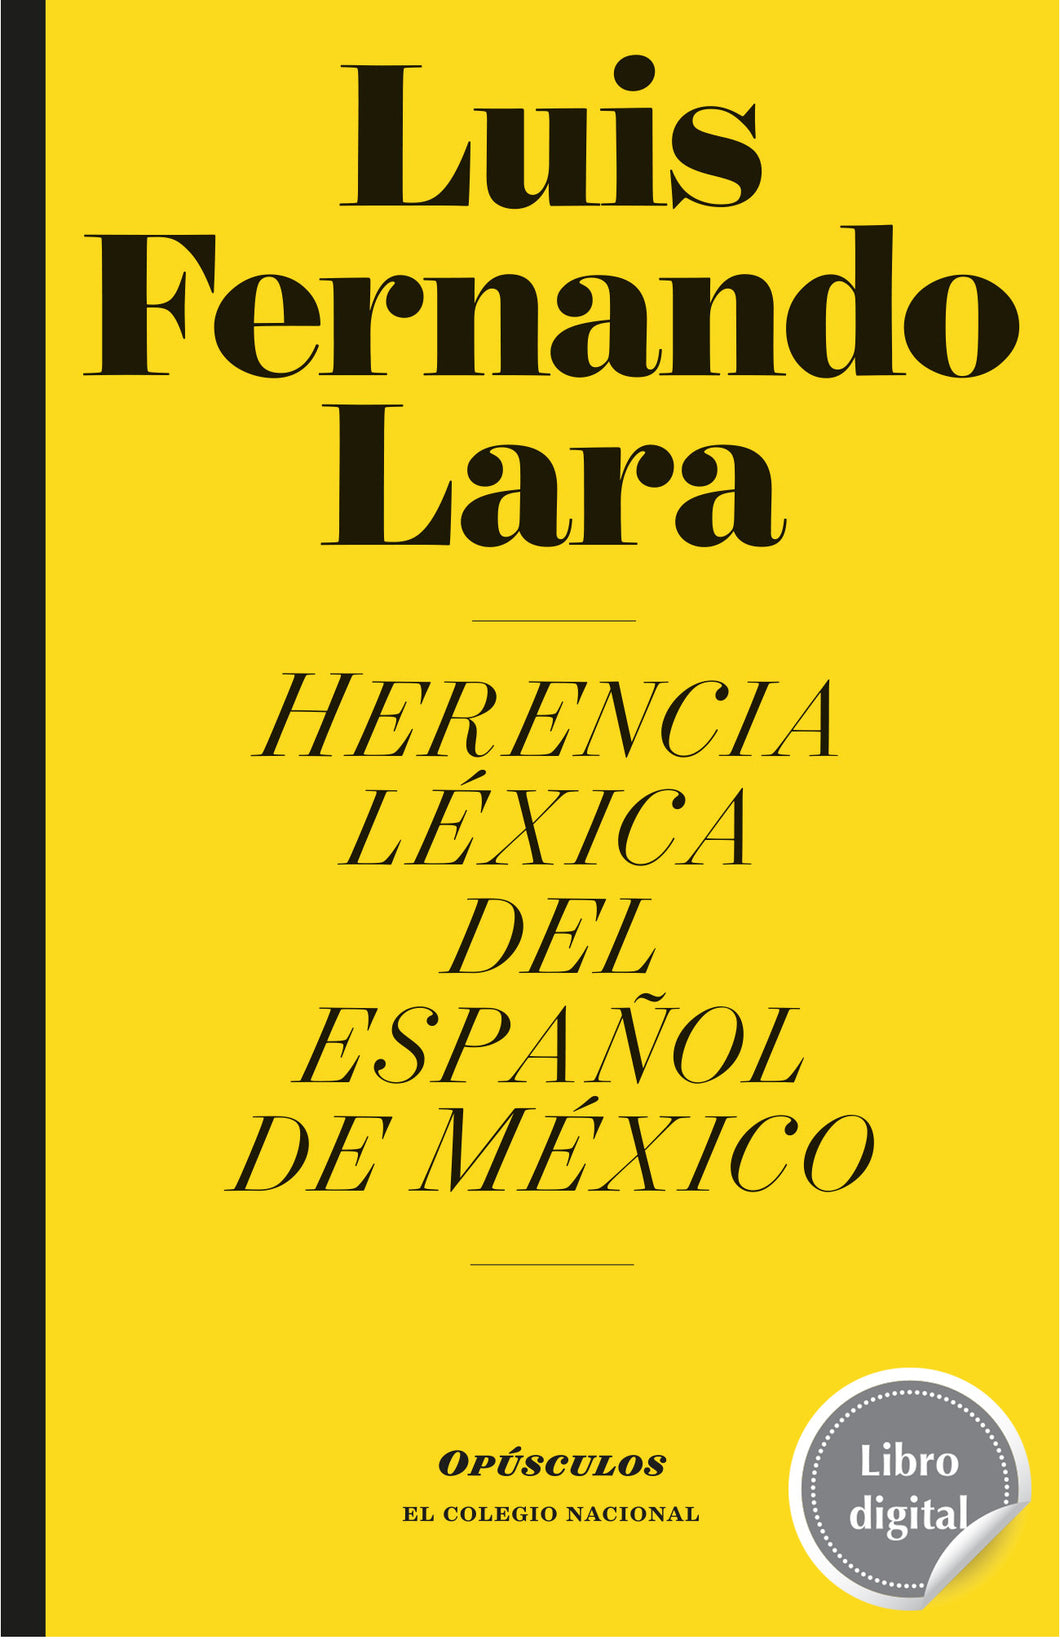 Herencia léxica del español de México de Luis Fernando Lara, libro digital de El Colegio Nacional, Libros Colnal